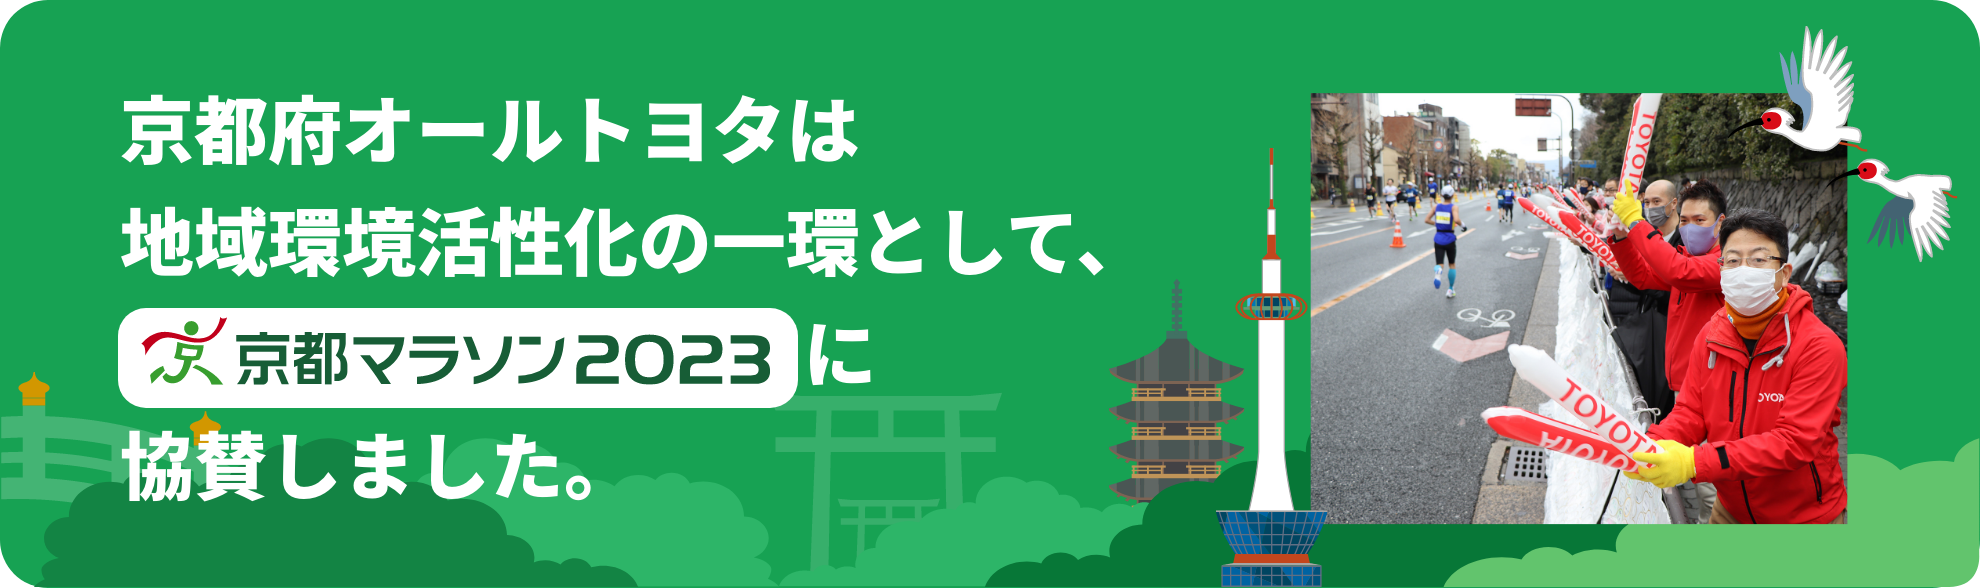 京都府オールトヨタは地域環境活性化の一環とし、京都マラソン2023に協賛しました。